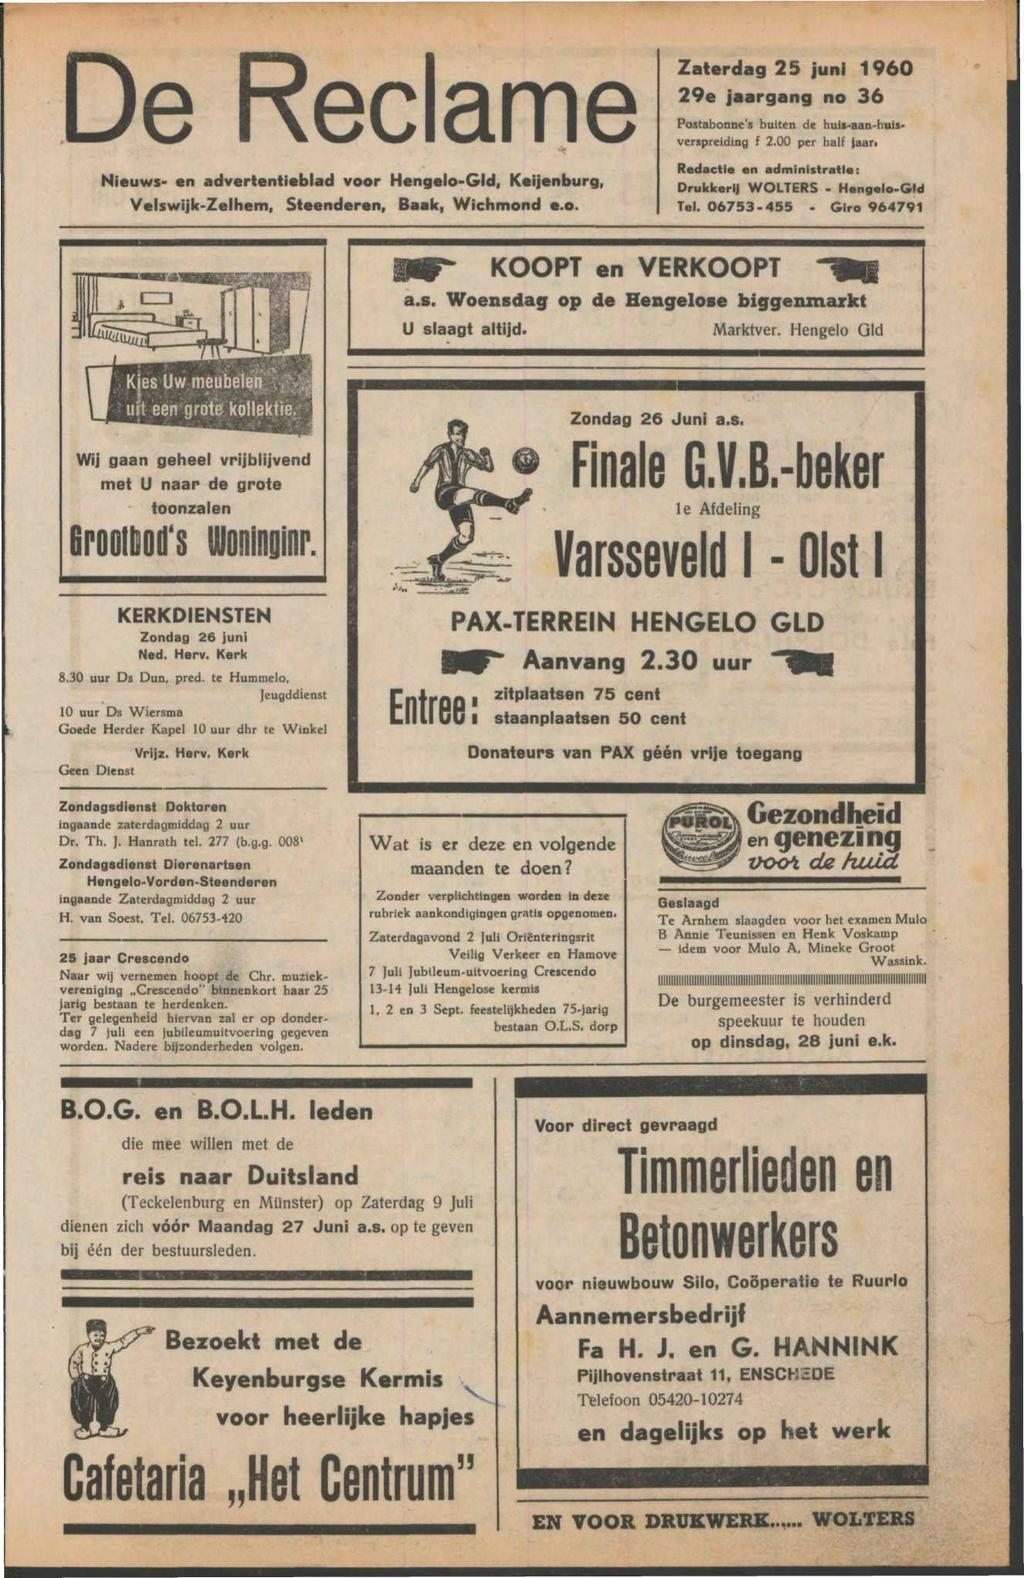 De Reclame Nieuws- en advertentieblad voor Hengelo-Gld, Keijenburg, Velswijk-Zelhem, Steenderen, Baak, Wichmond e.o. Zaterdag 25 juni 1960 29e jaargang no 36 Postabonne's buiten de huis-aan-huis» verspreiding f 2.